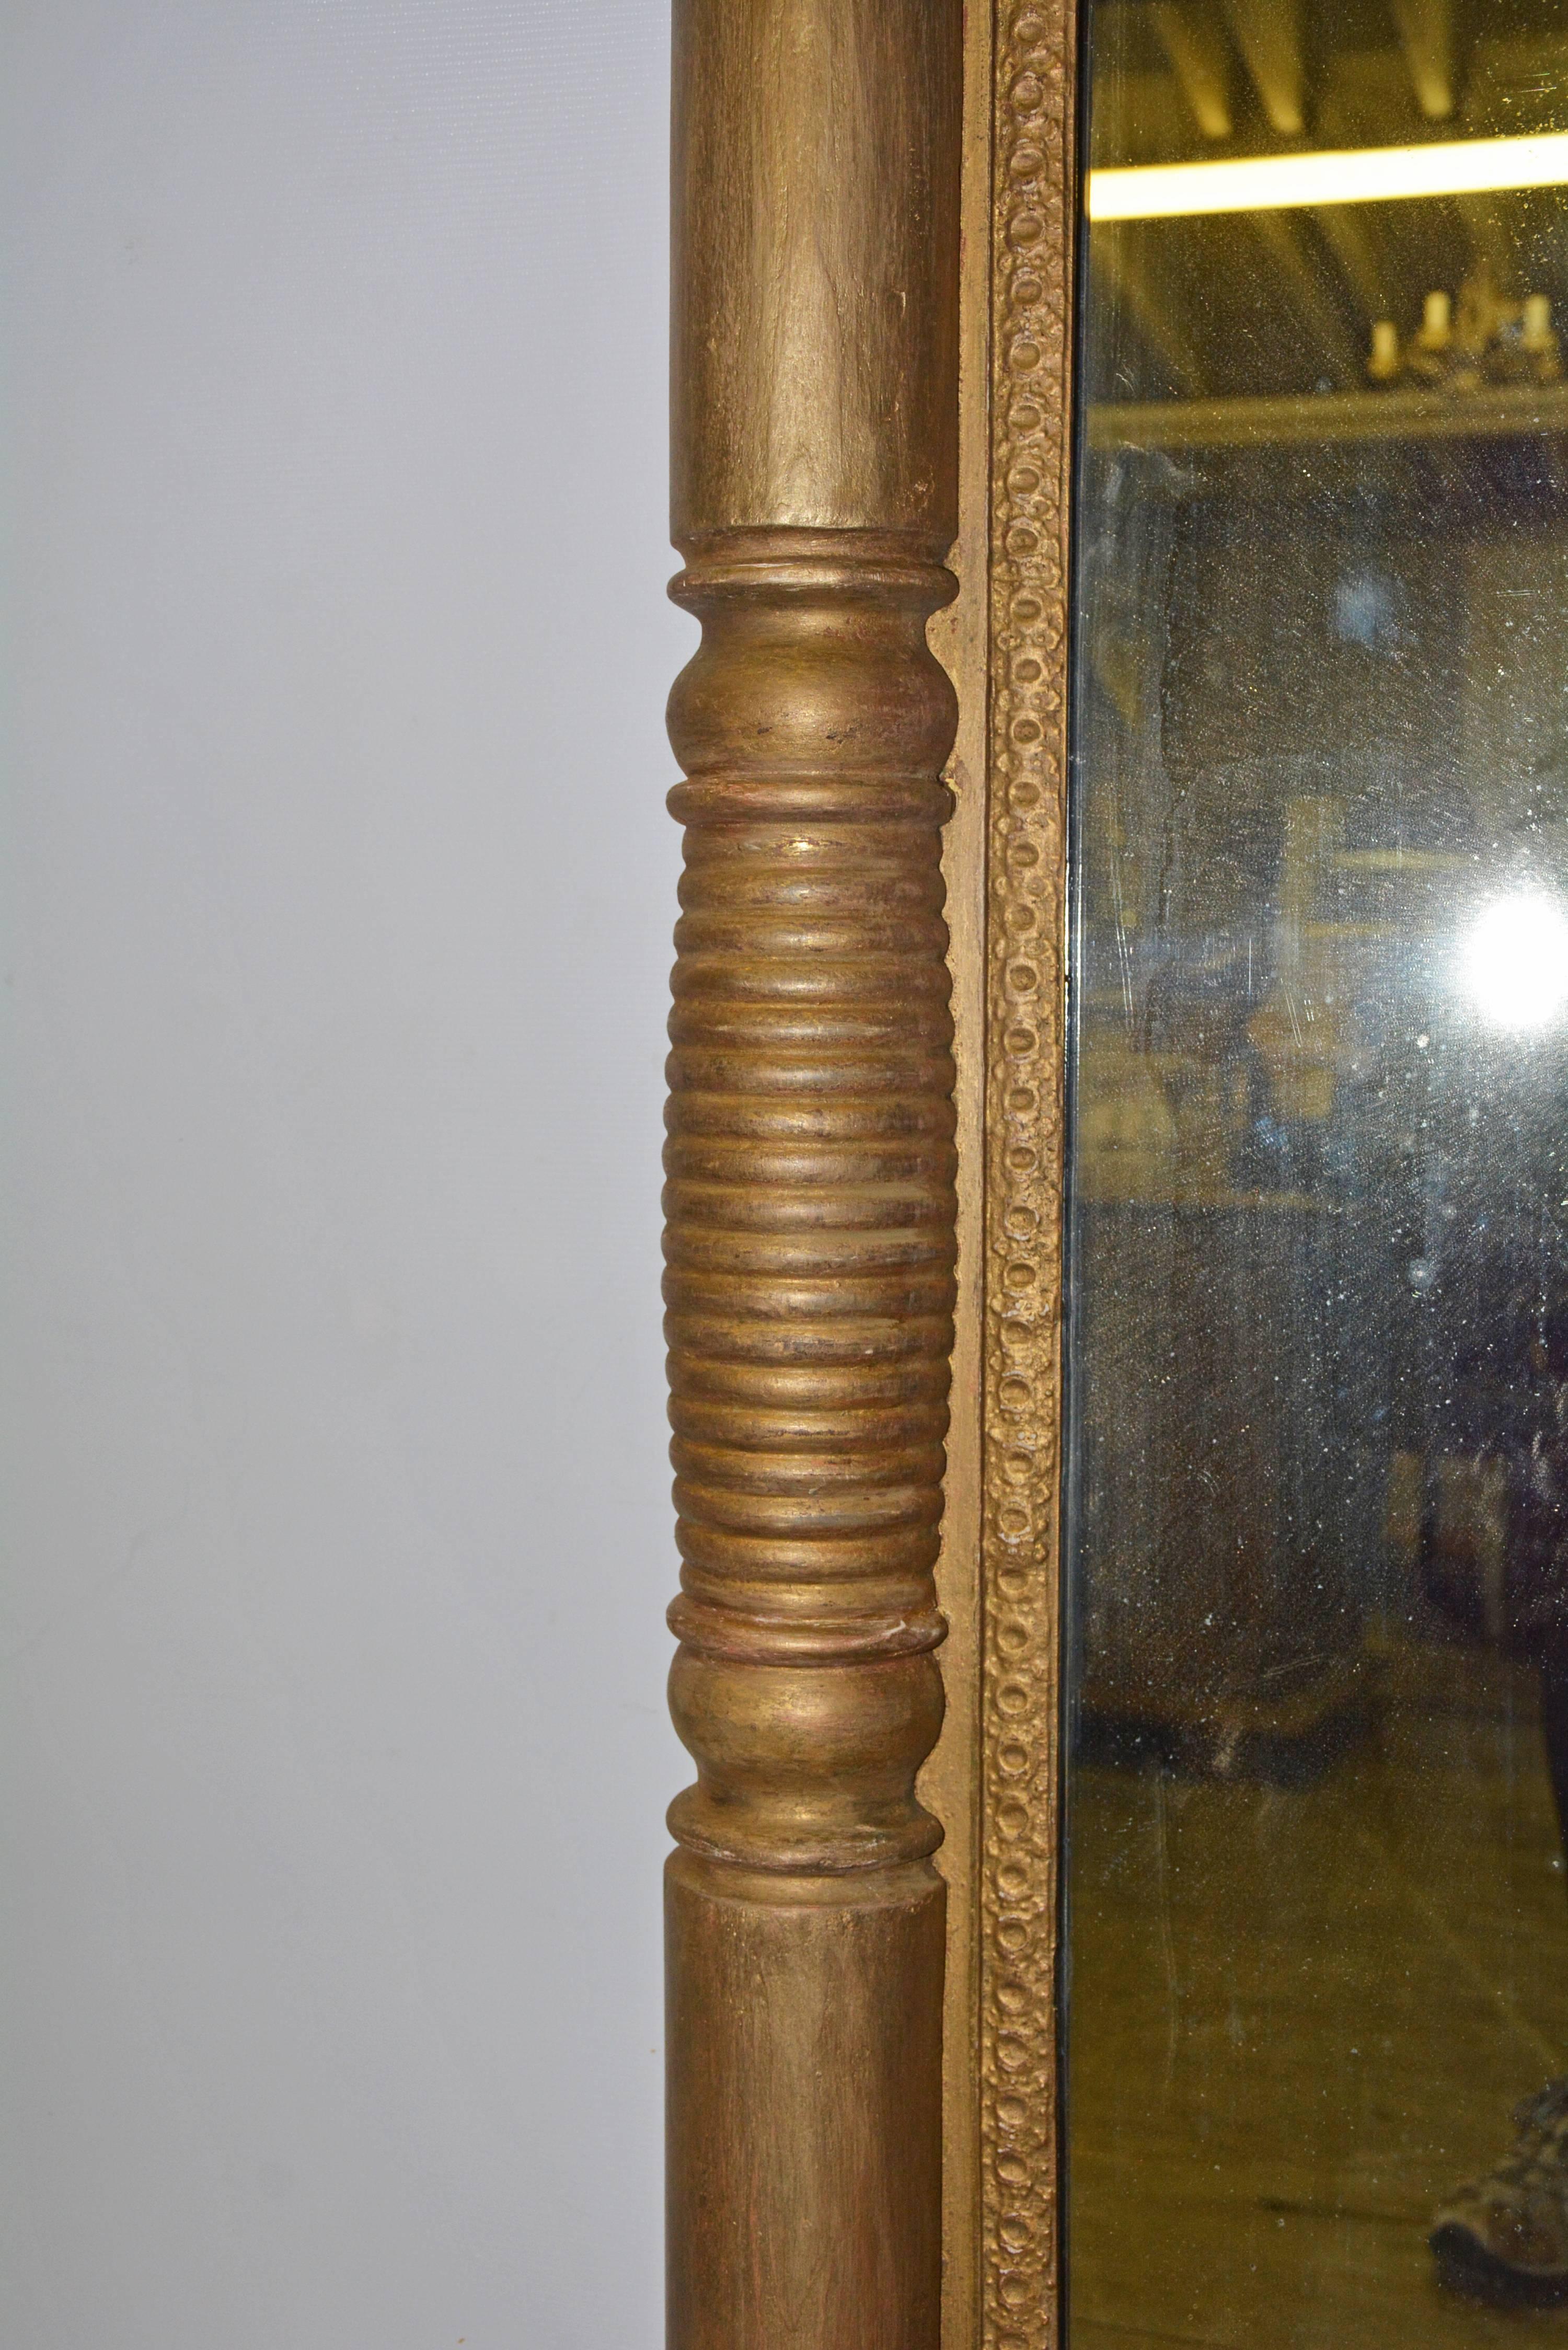 Le miroir argenté de style fédéral de la fin du XIXe siècle est composé d'une alternance de pilastres à sections nervurées et lisses se terminant aux angles par des blocs carrés. Le support est composé de six planches horizontales et est câblé pour